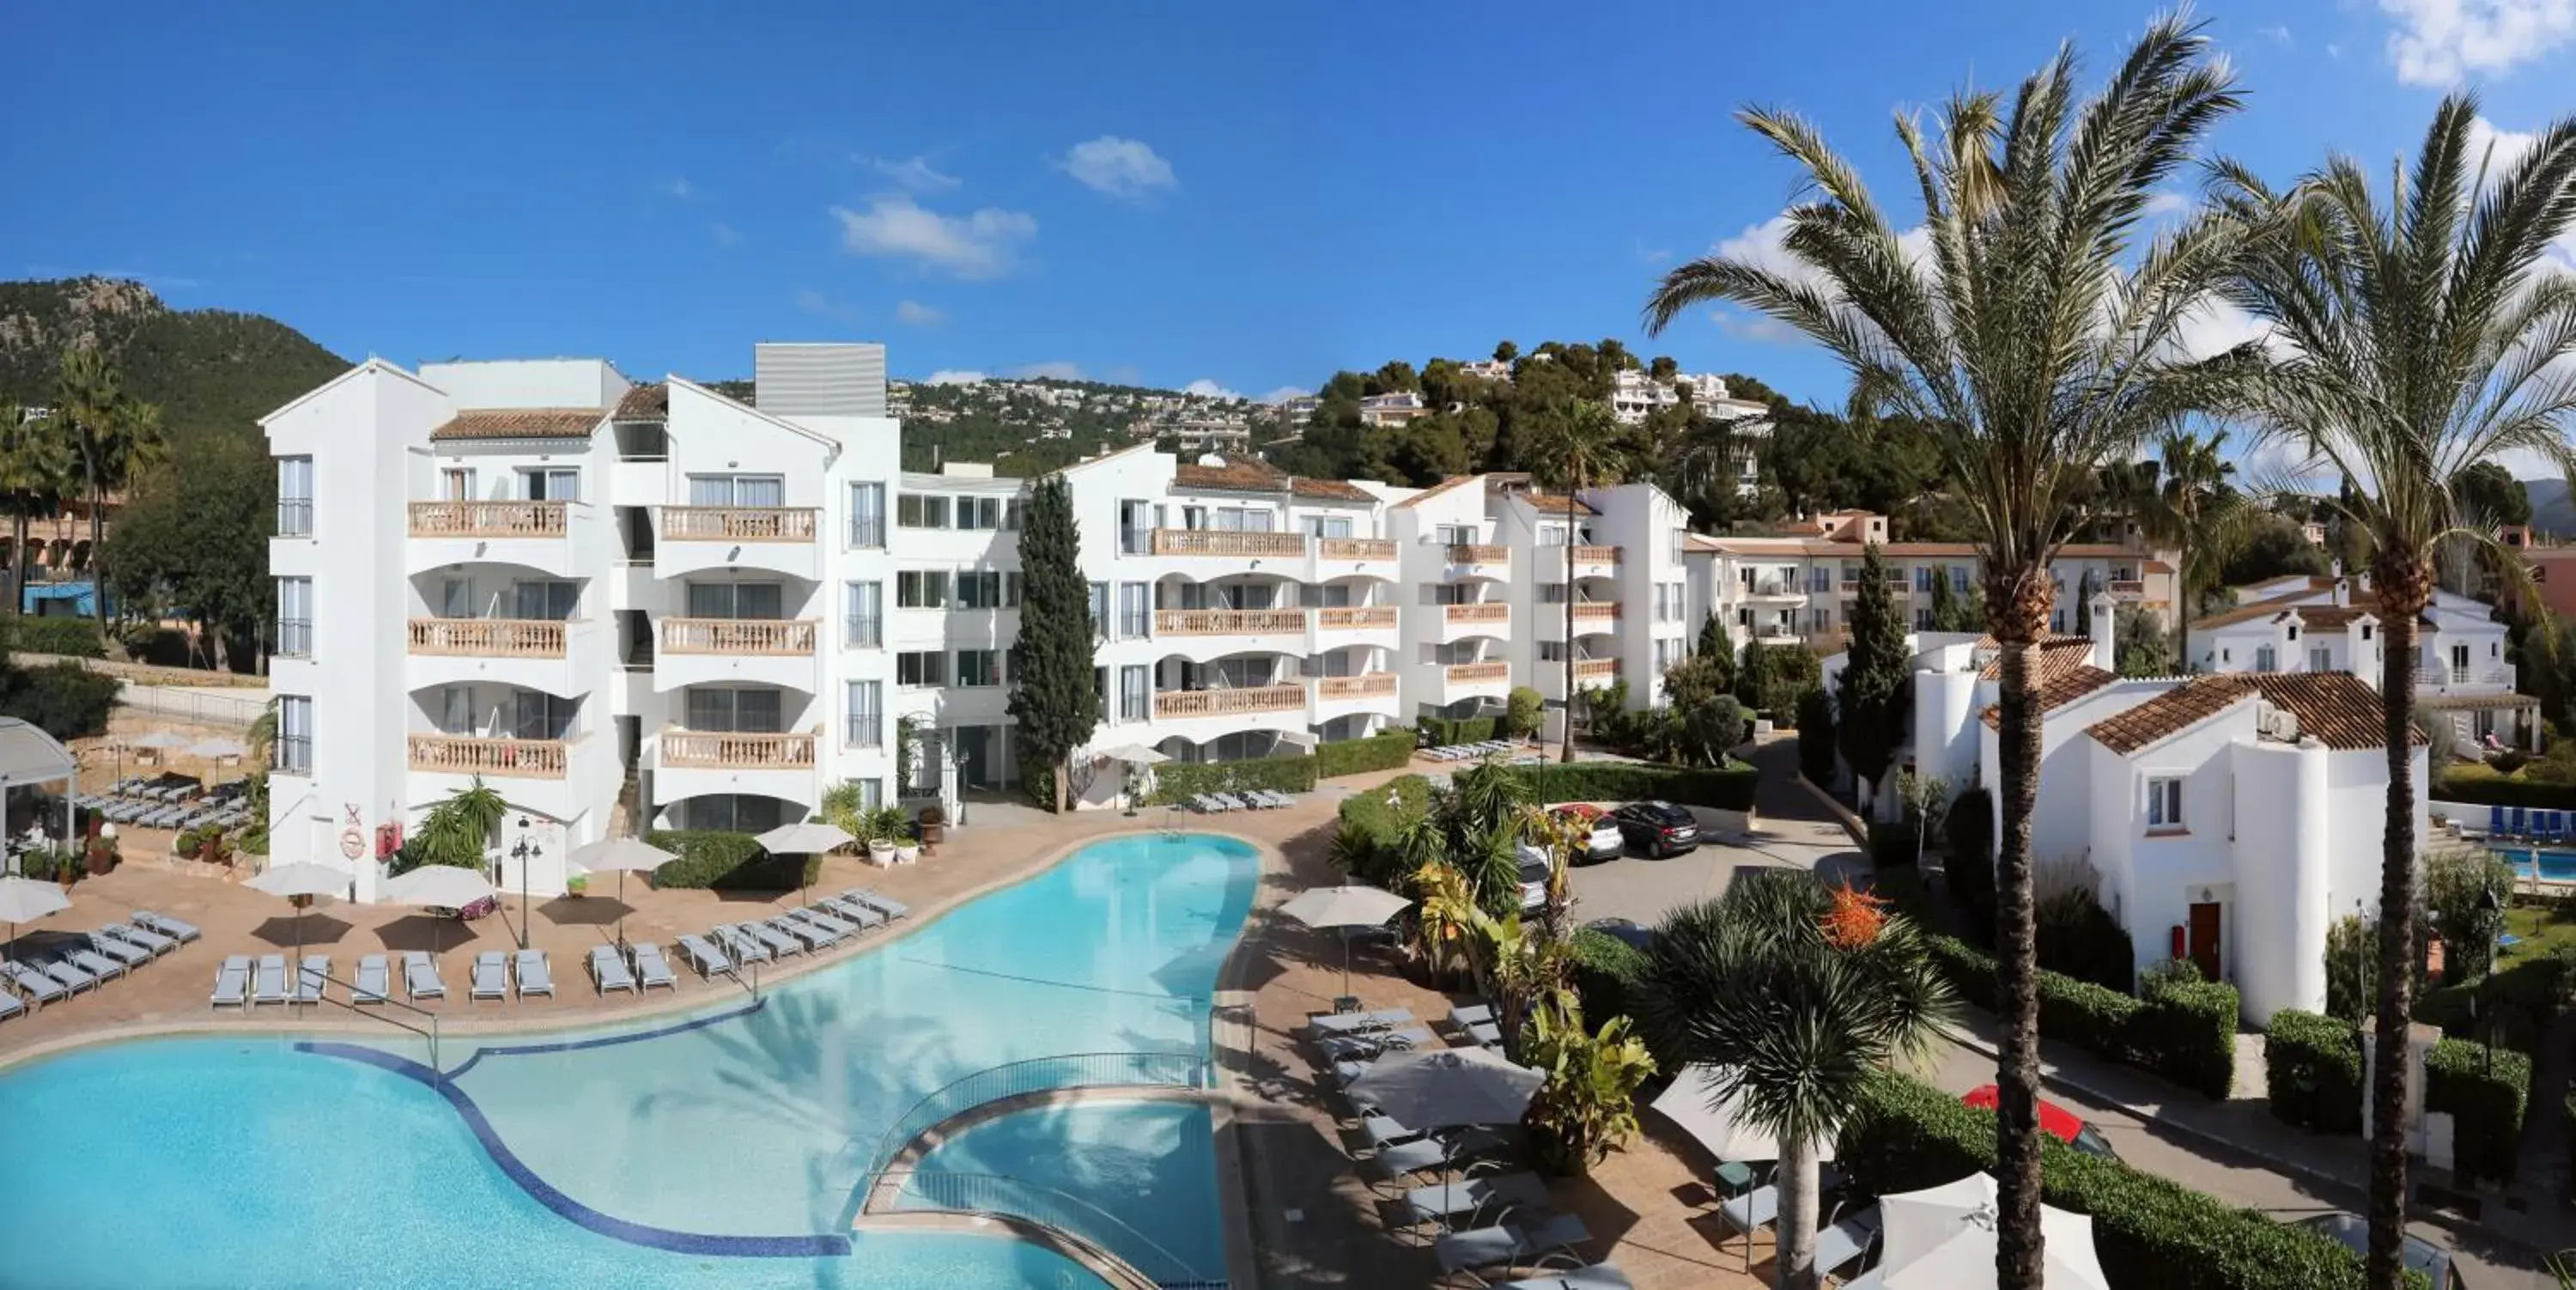 Pool View in Hotel La Pergola Mallorca